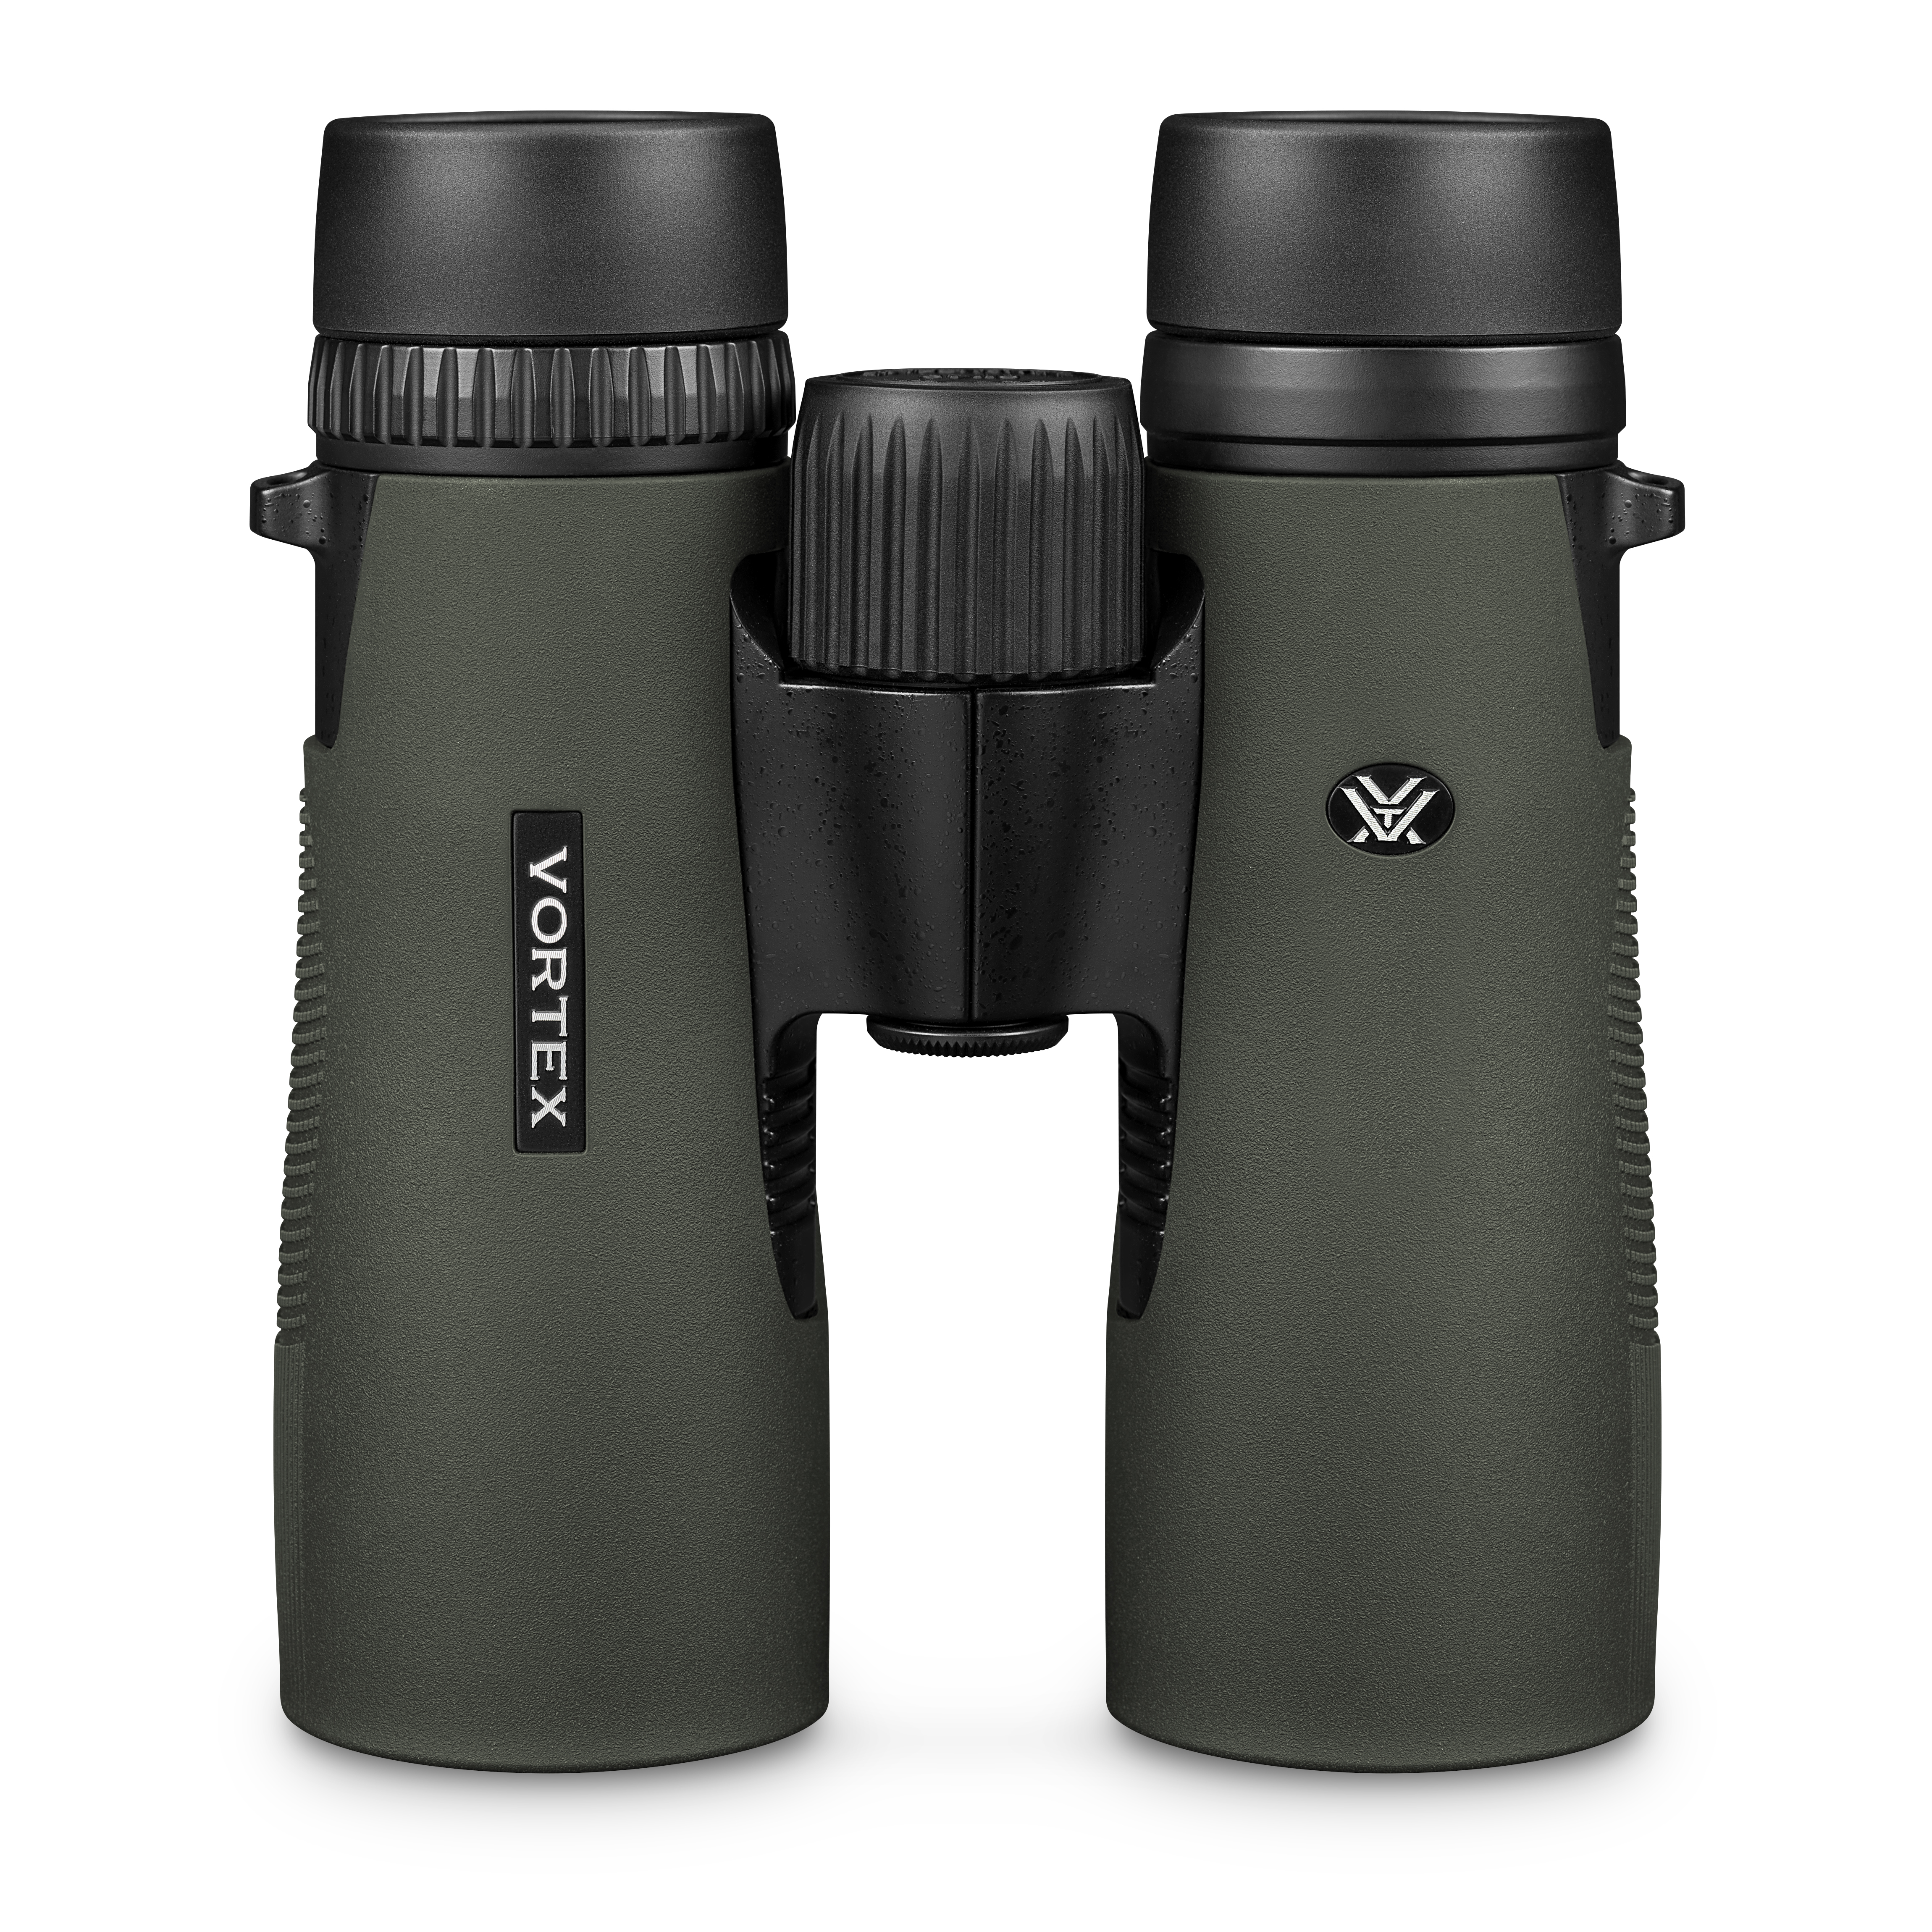 Vortex Diamondback HD 10x42 Binoculars 